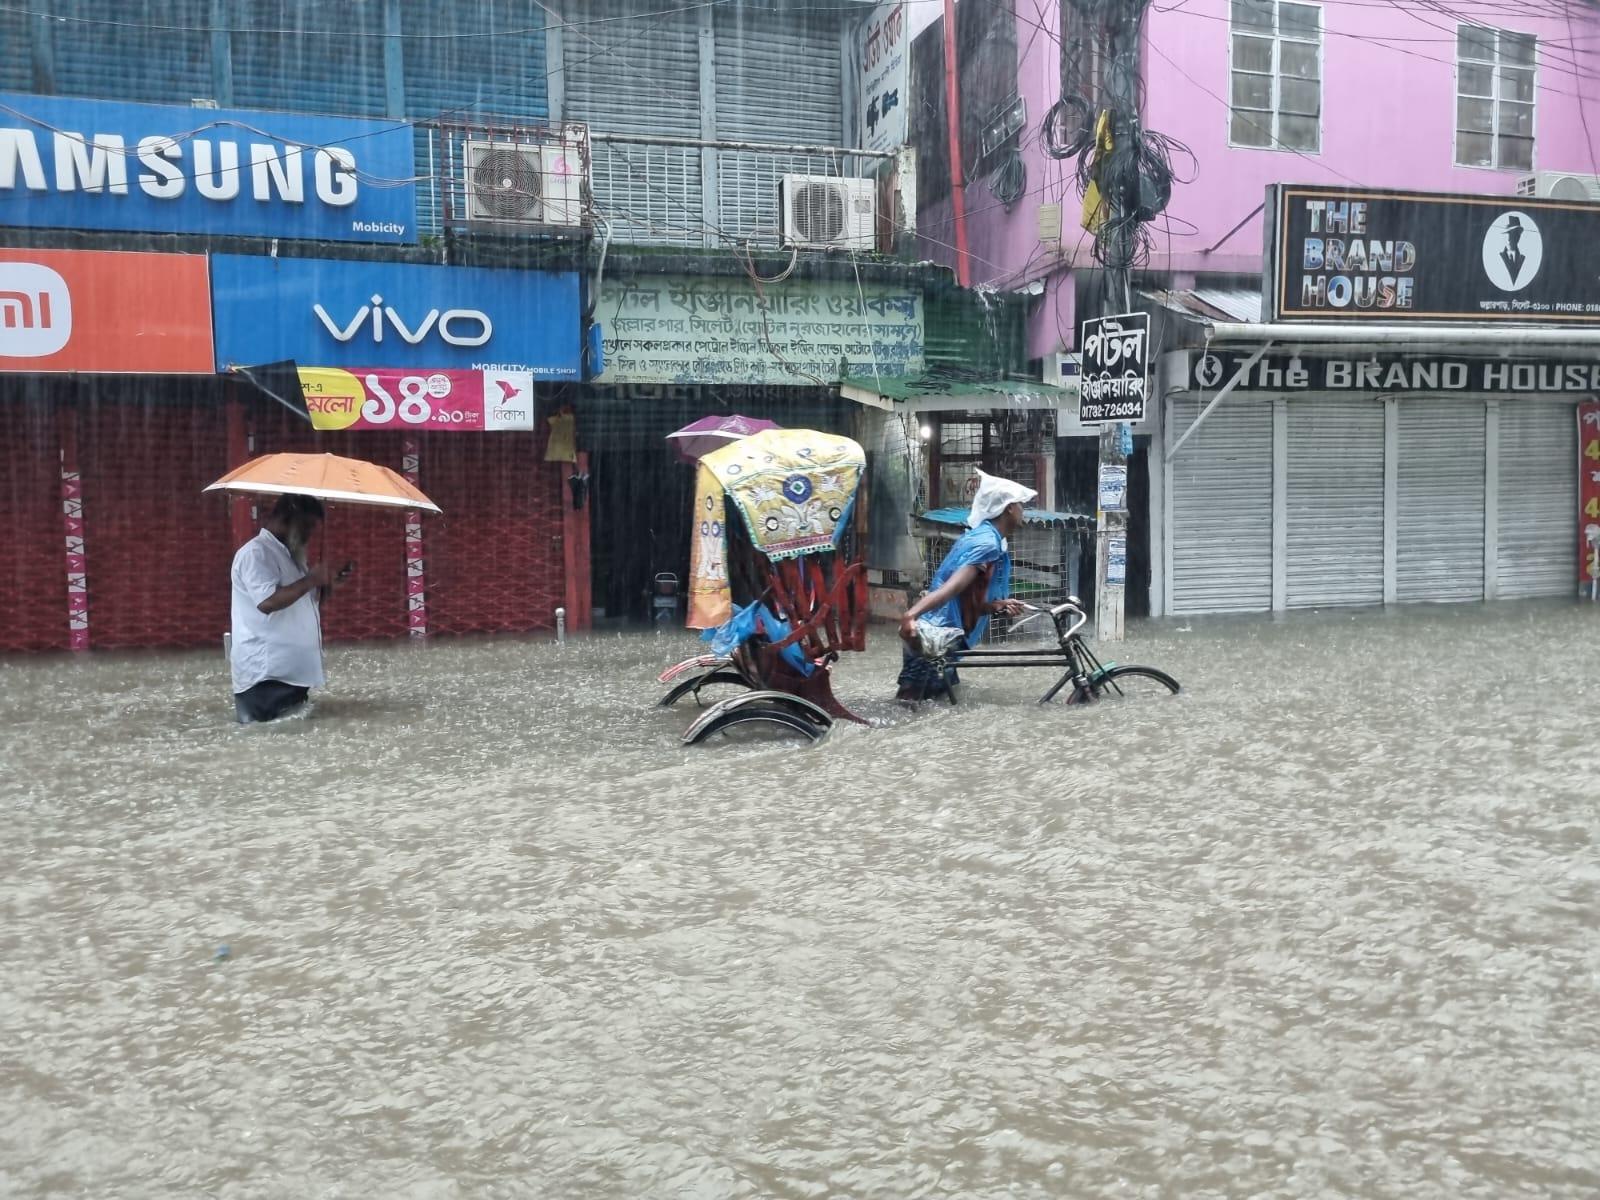 Un homme tire son rickshaw sous une pluie battante dans une rue inondée où les commerces sont fermés.  Derrière lui, un homme marche avec un parapluie. Ils ont de l'eau jusqu'à la taille.